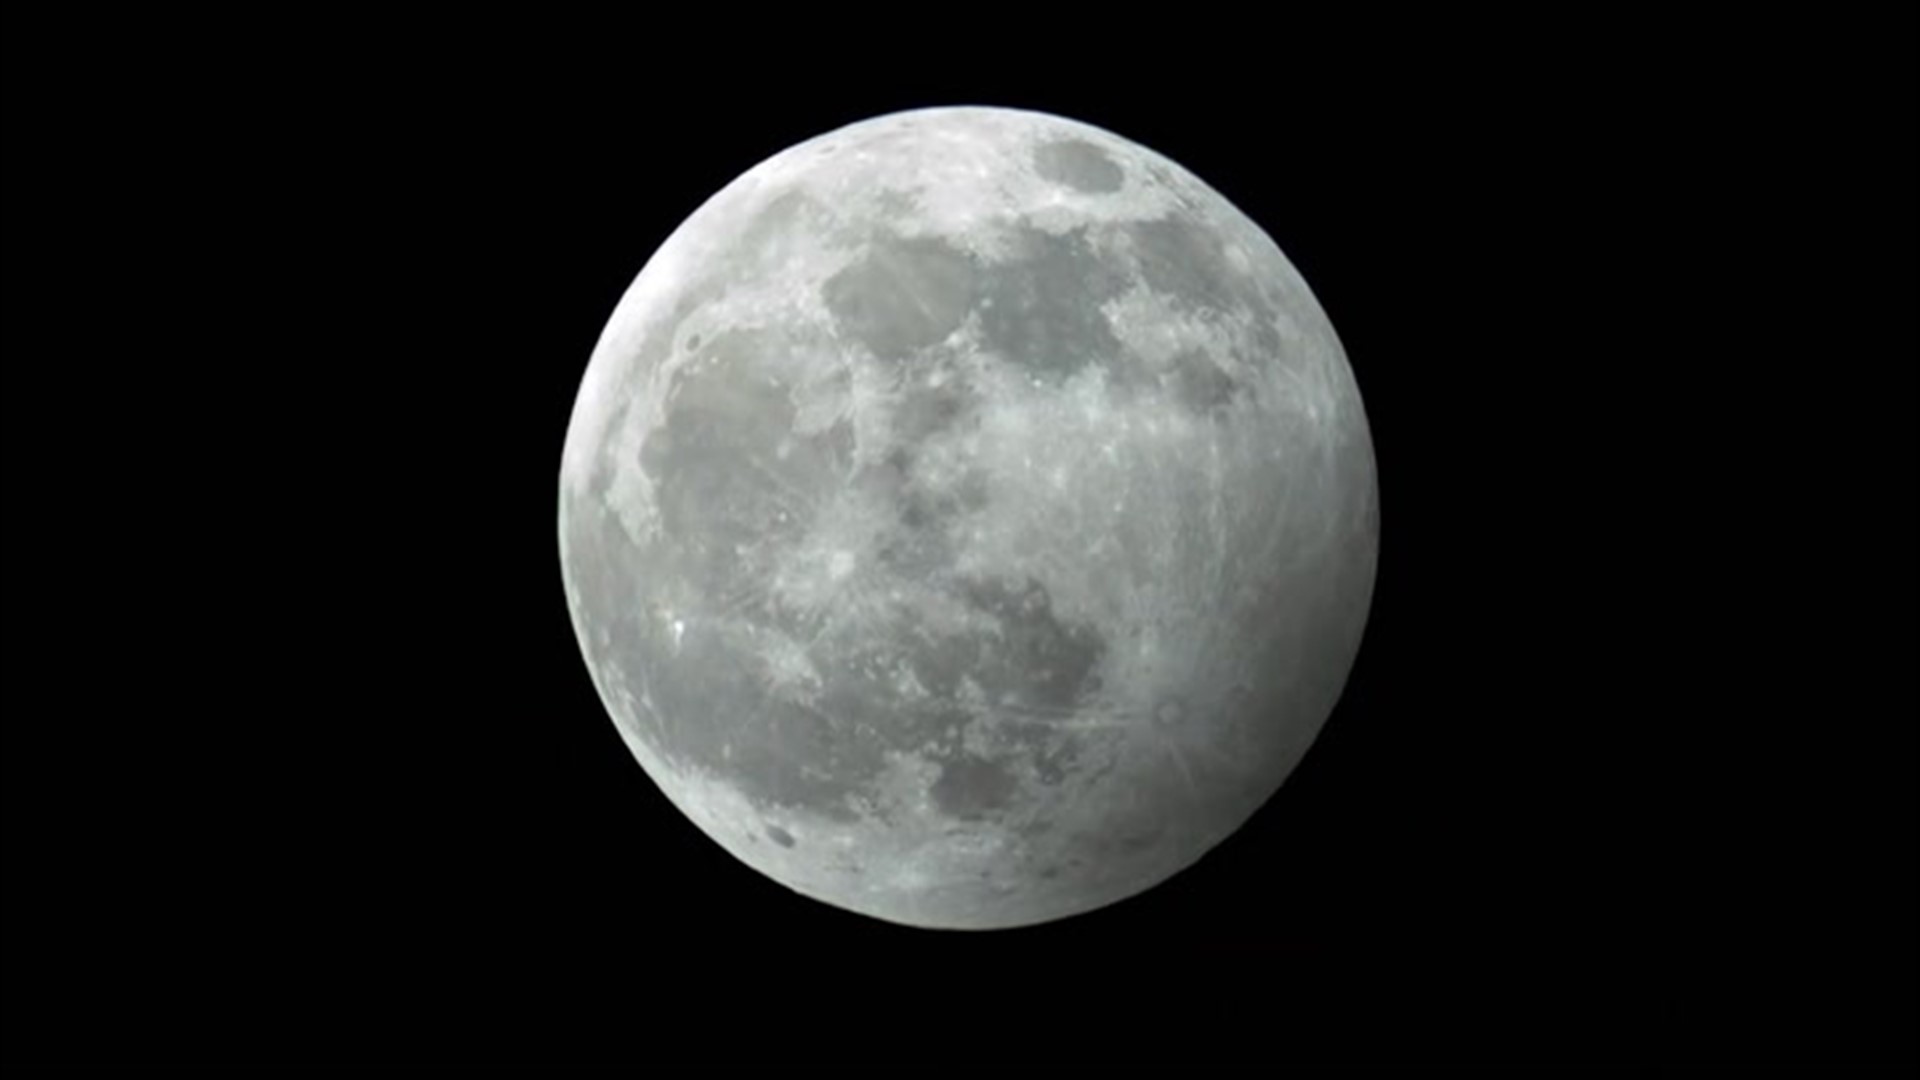 4th of July lunar eclipse to darken the moon cbs19.tv